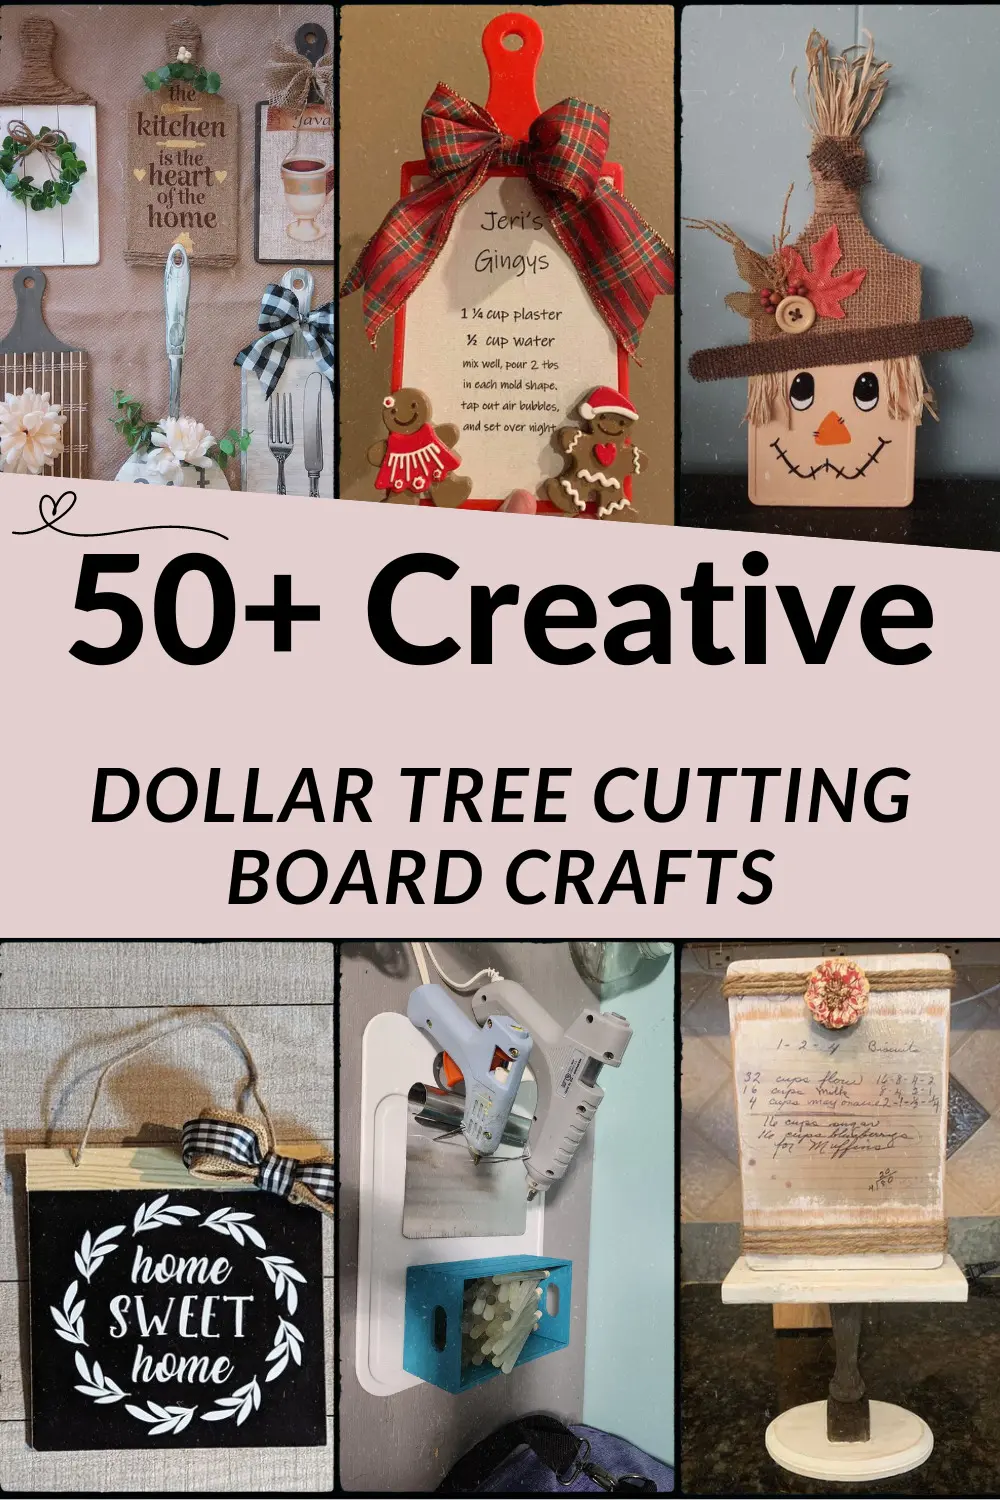 Dollar Tree Cutting Board Crafts